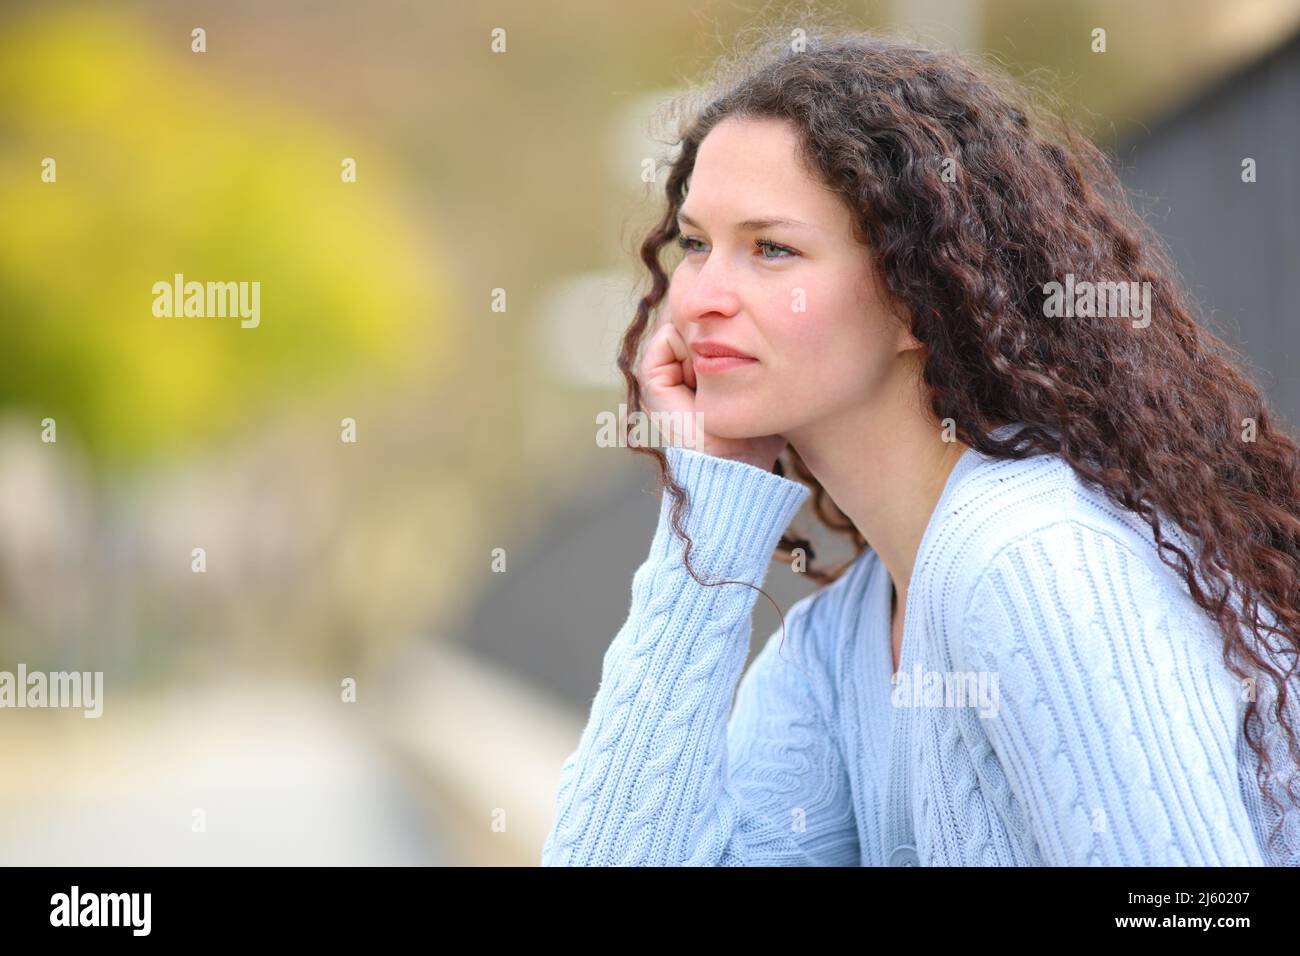 Seriöse, nachdenkliche Frau, die in einem Park sitzt und wegschaut Stockfoto